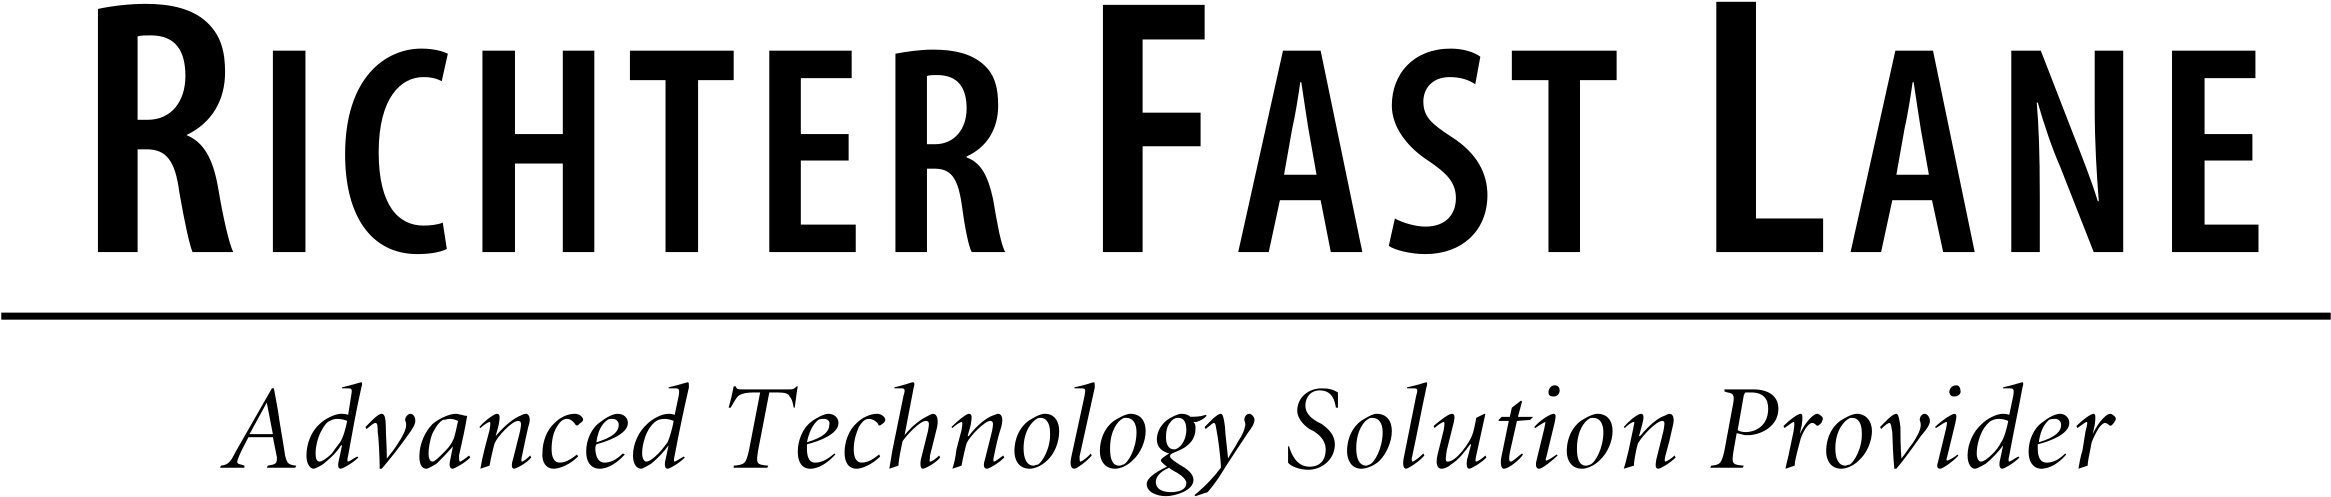 Richter Fast Lane Logo Png Transparent - Jda Software Clipart (2400x2400), Png Download